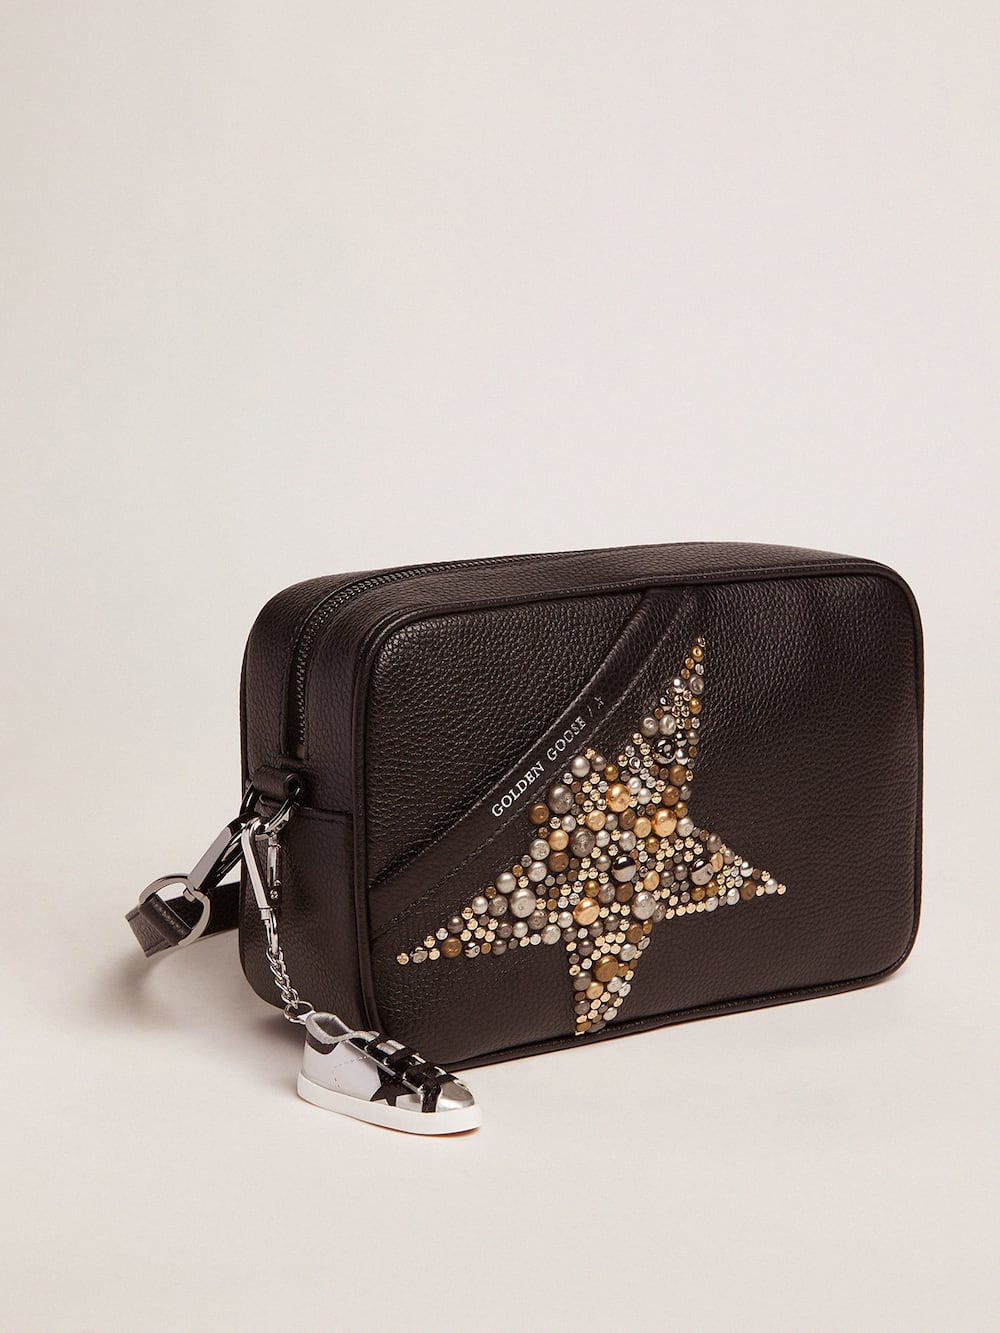 Golden Goose - Bolso Star Bag negro de piel martillada con estrella con tachas in 